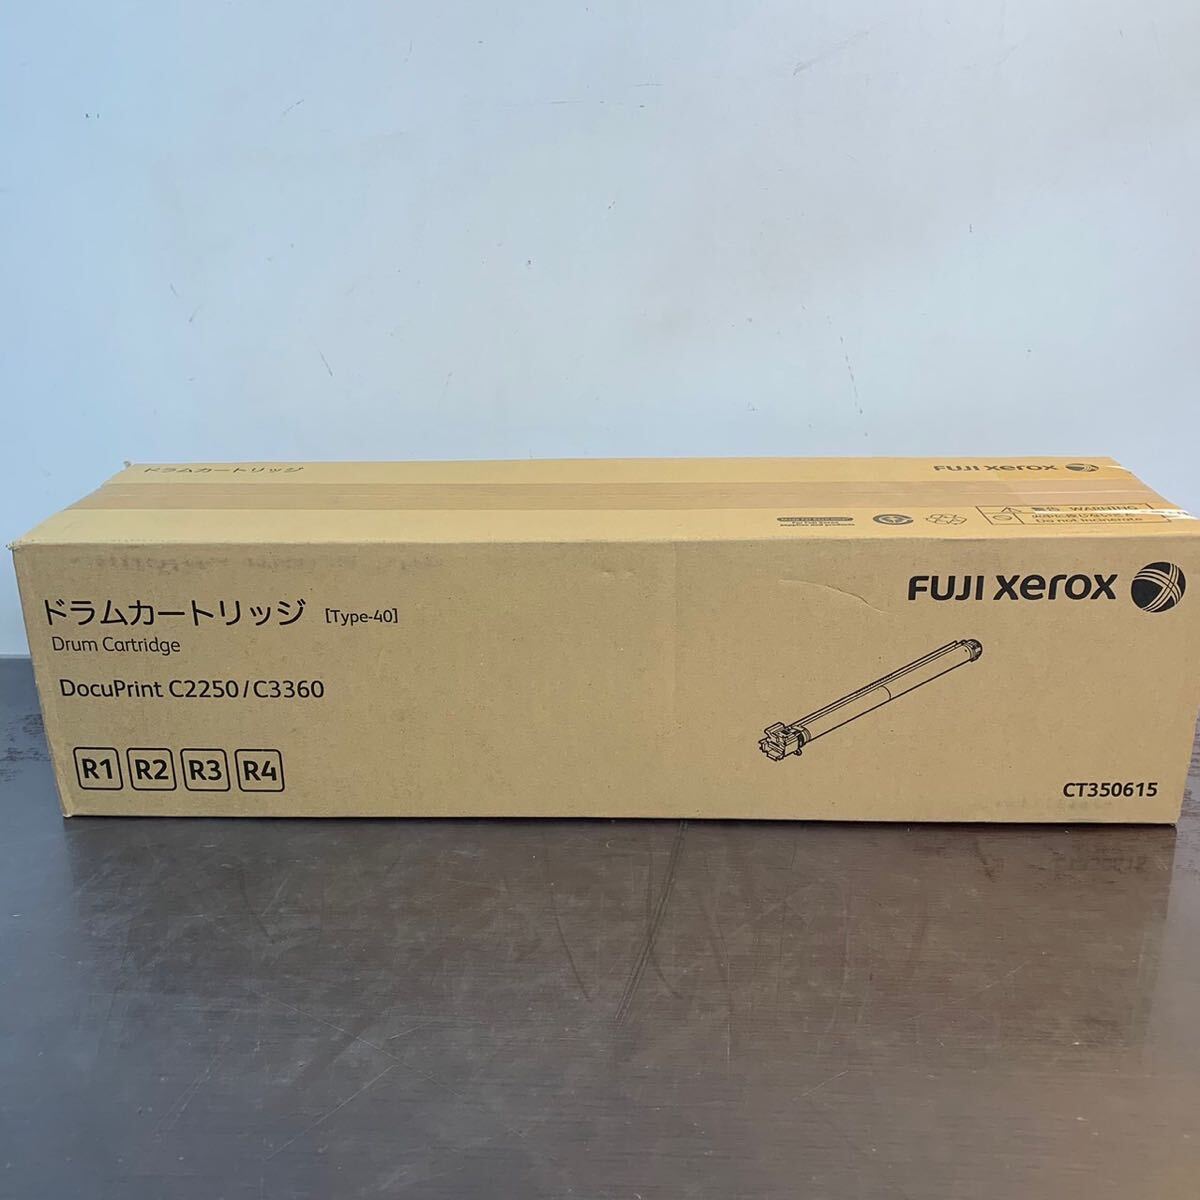 (5-27) FUJI XEROX CT350615 ドラムカートリッジ Type-40 DocuPrint C2250 / C3360の画像1